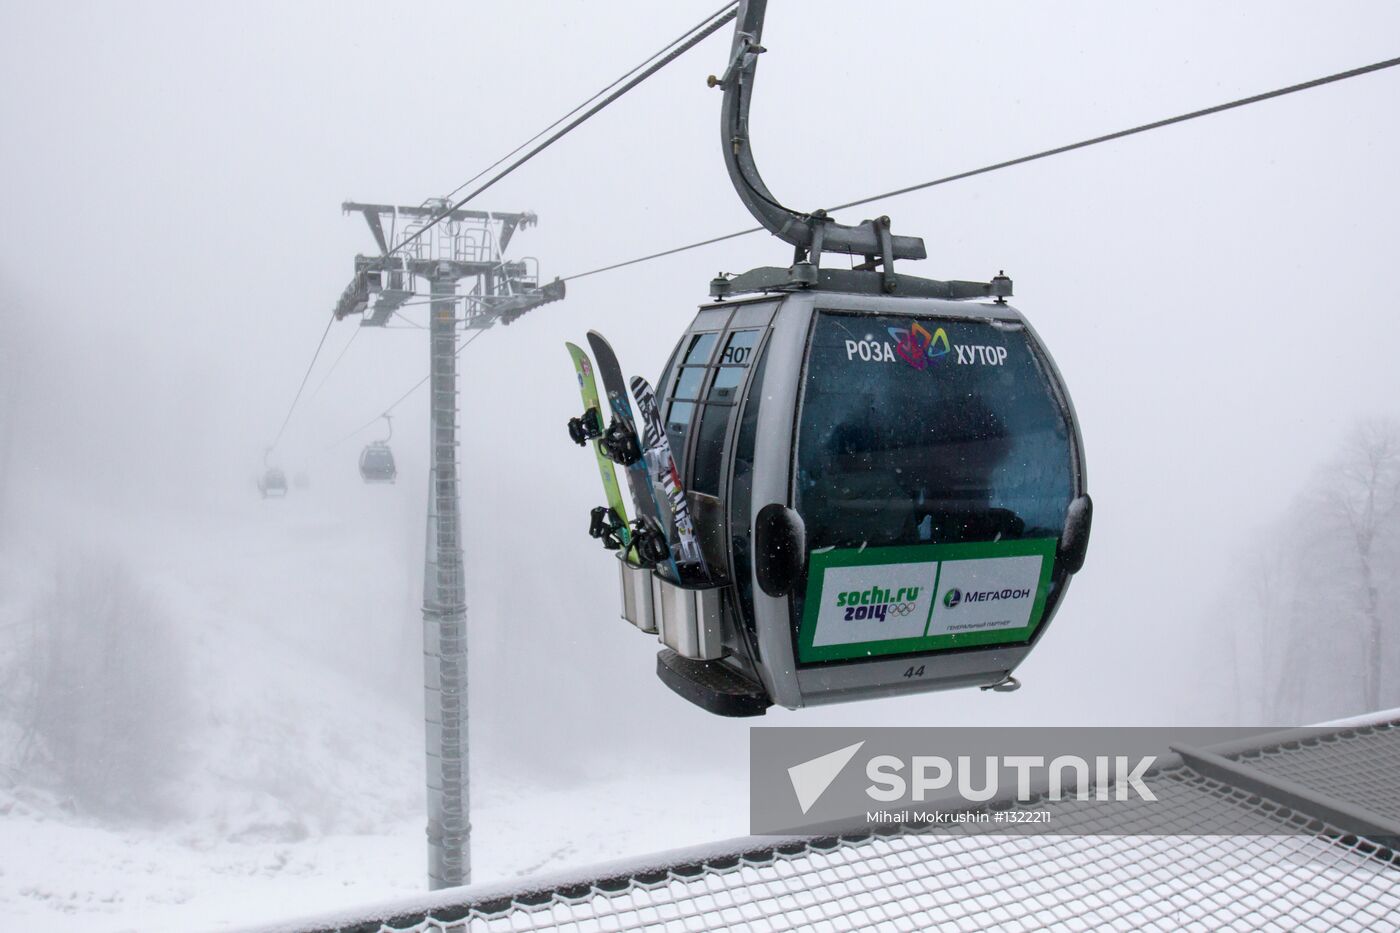 Krasnaya Polyana ski slopes open for skiing